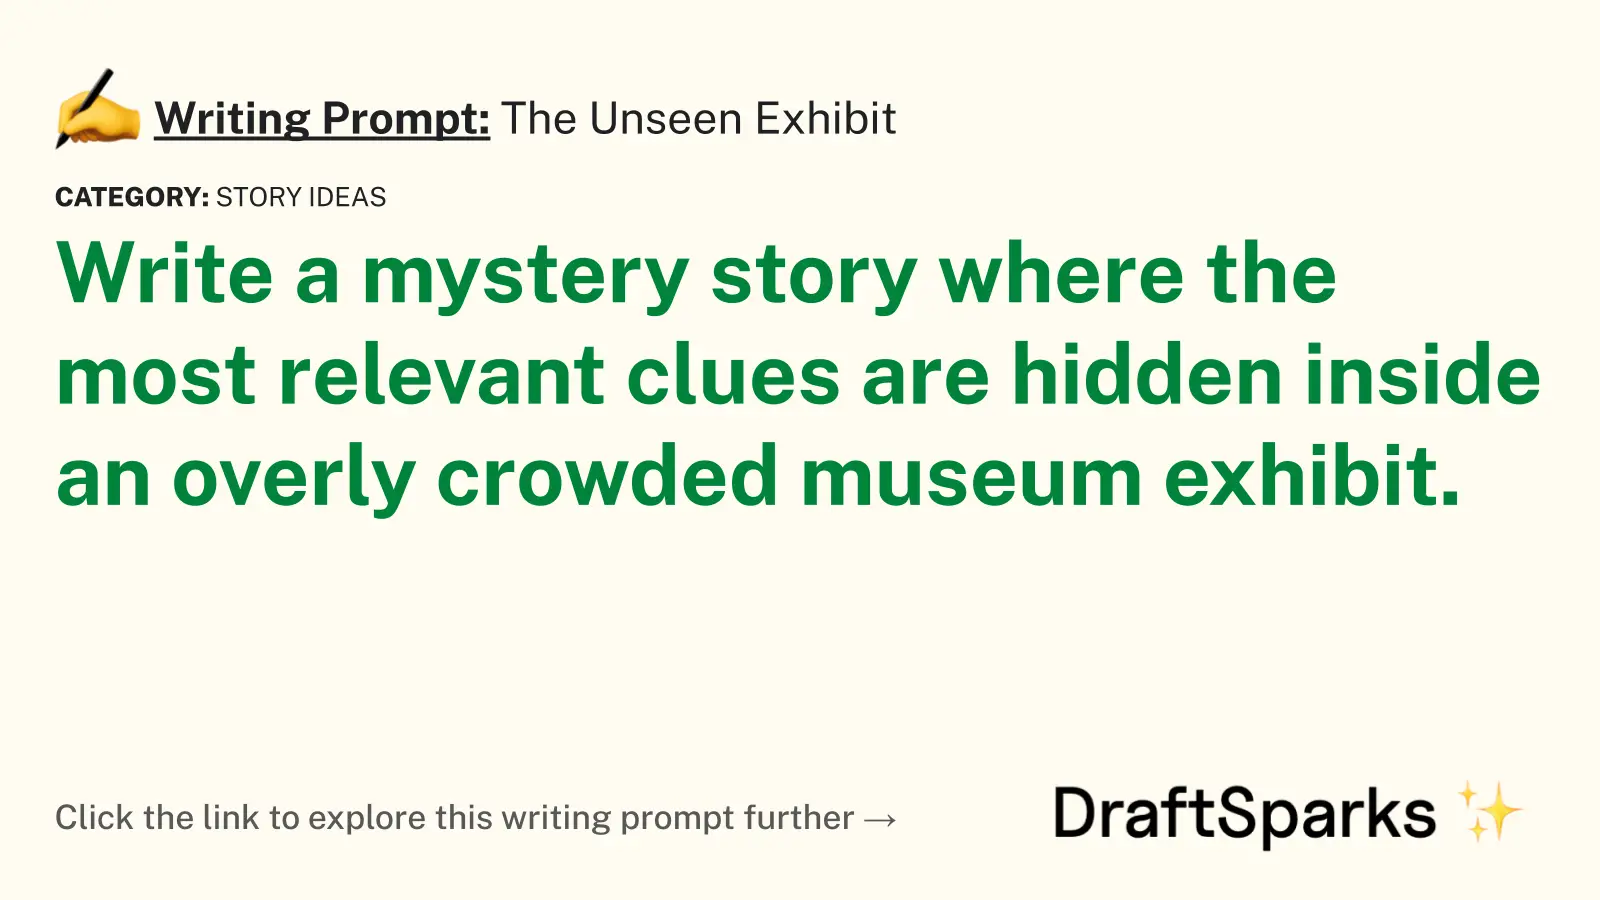 The Unseen Exhibit